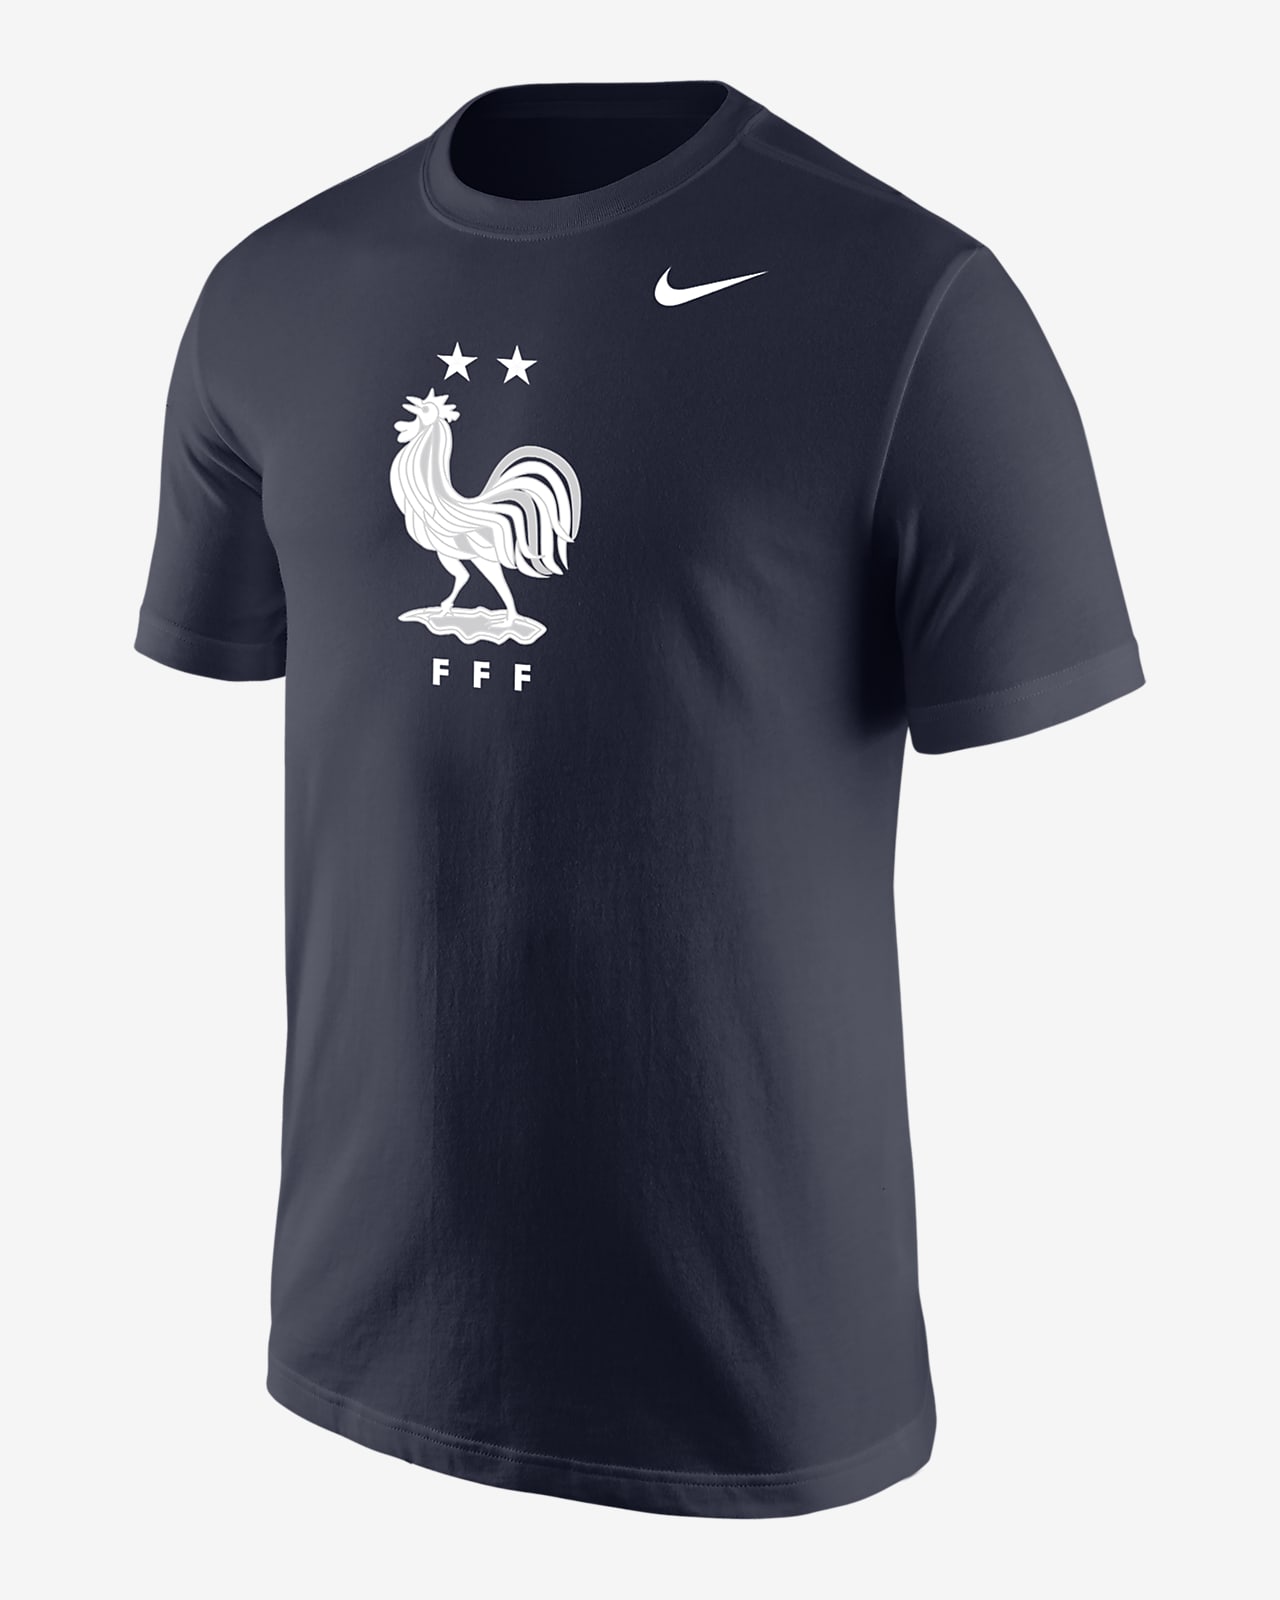 FFF Men's Nike Core T-Shirt